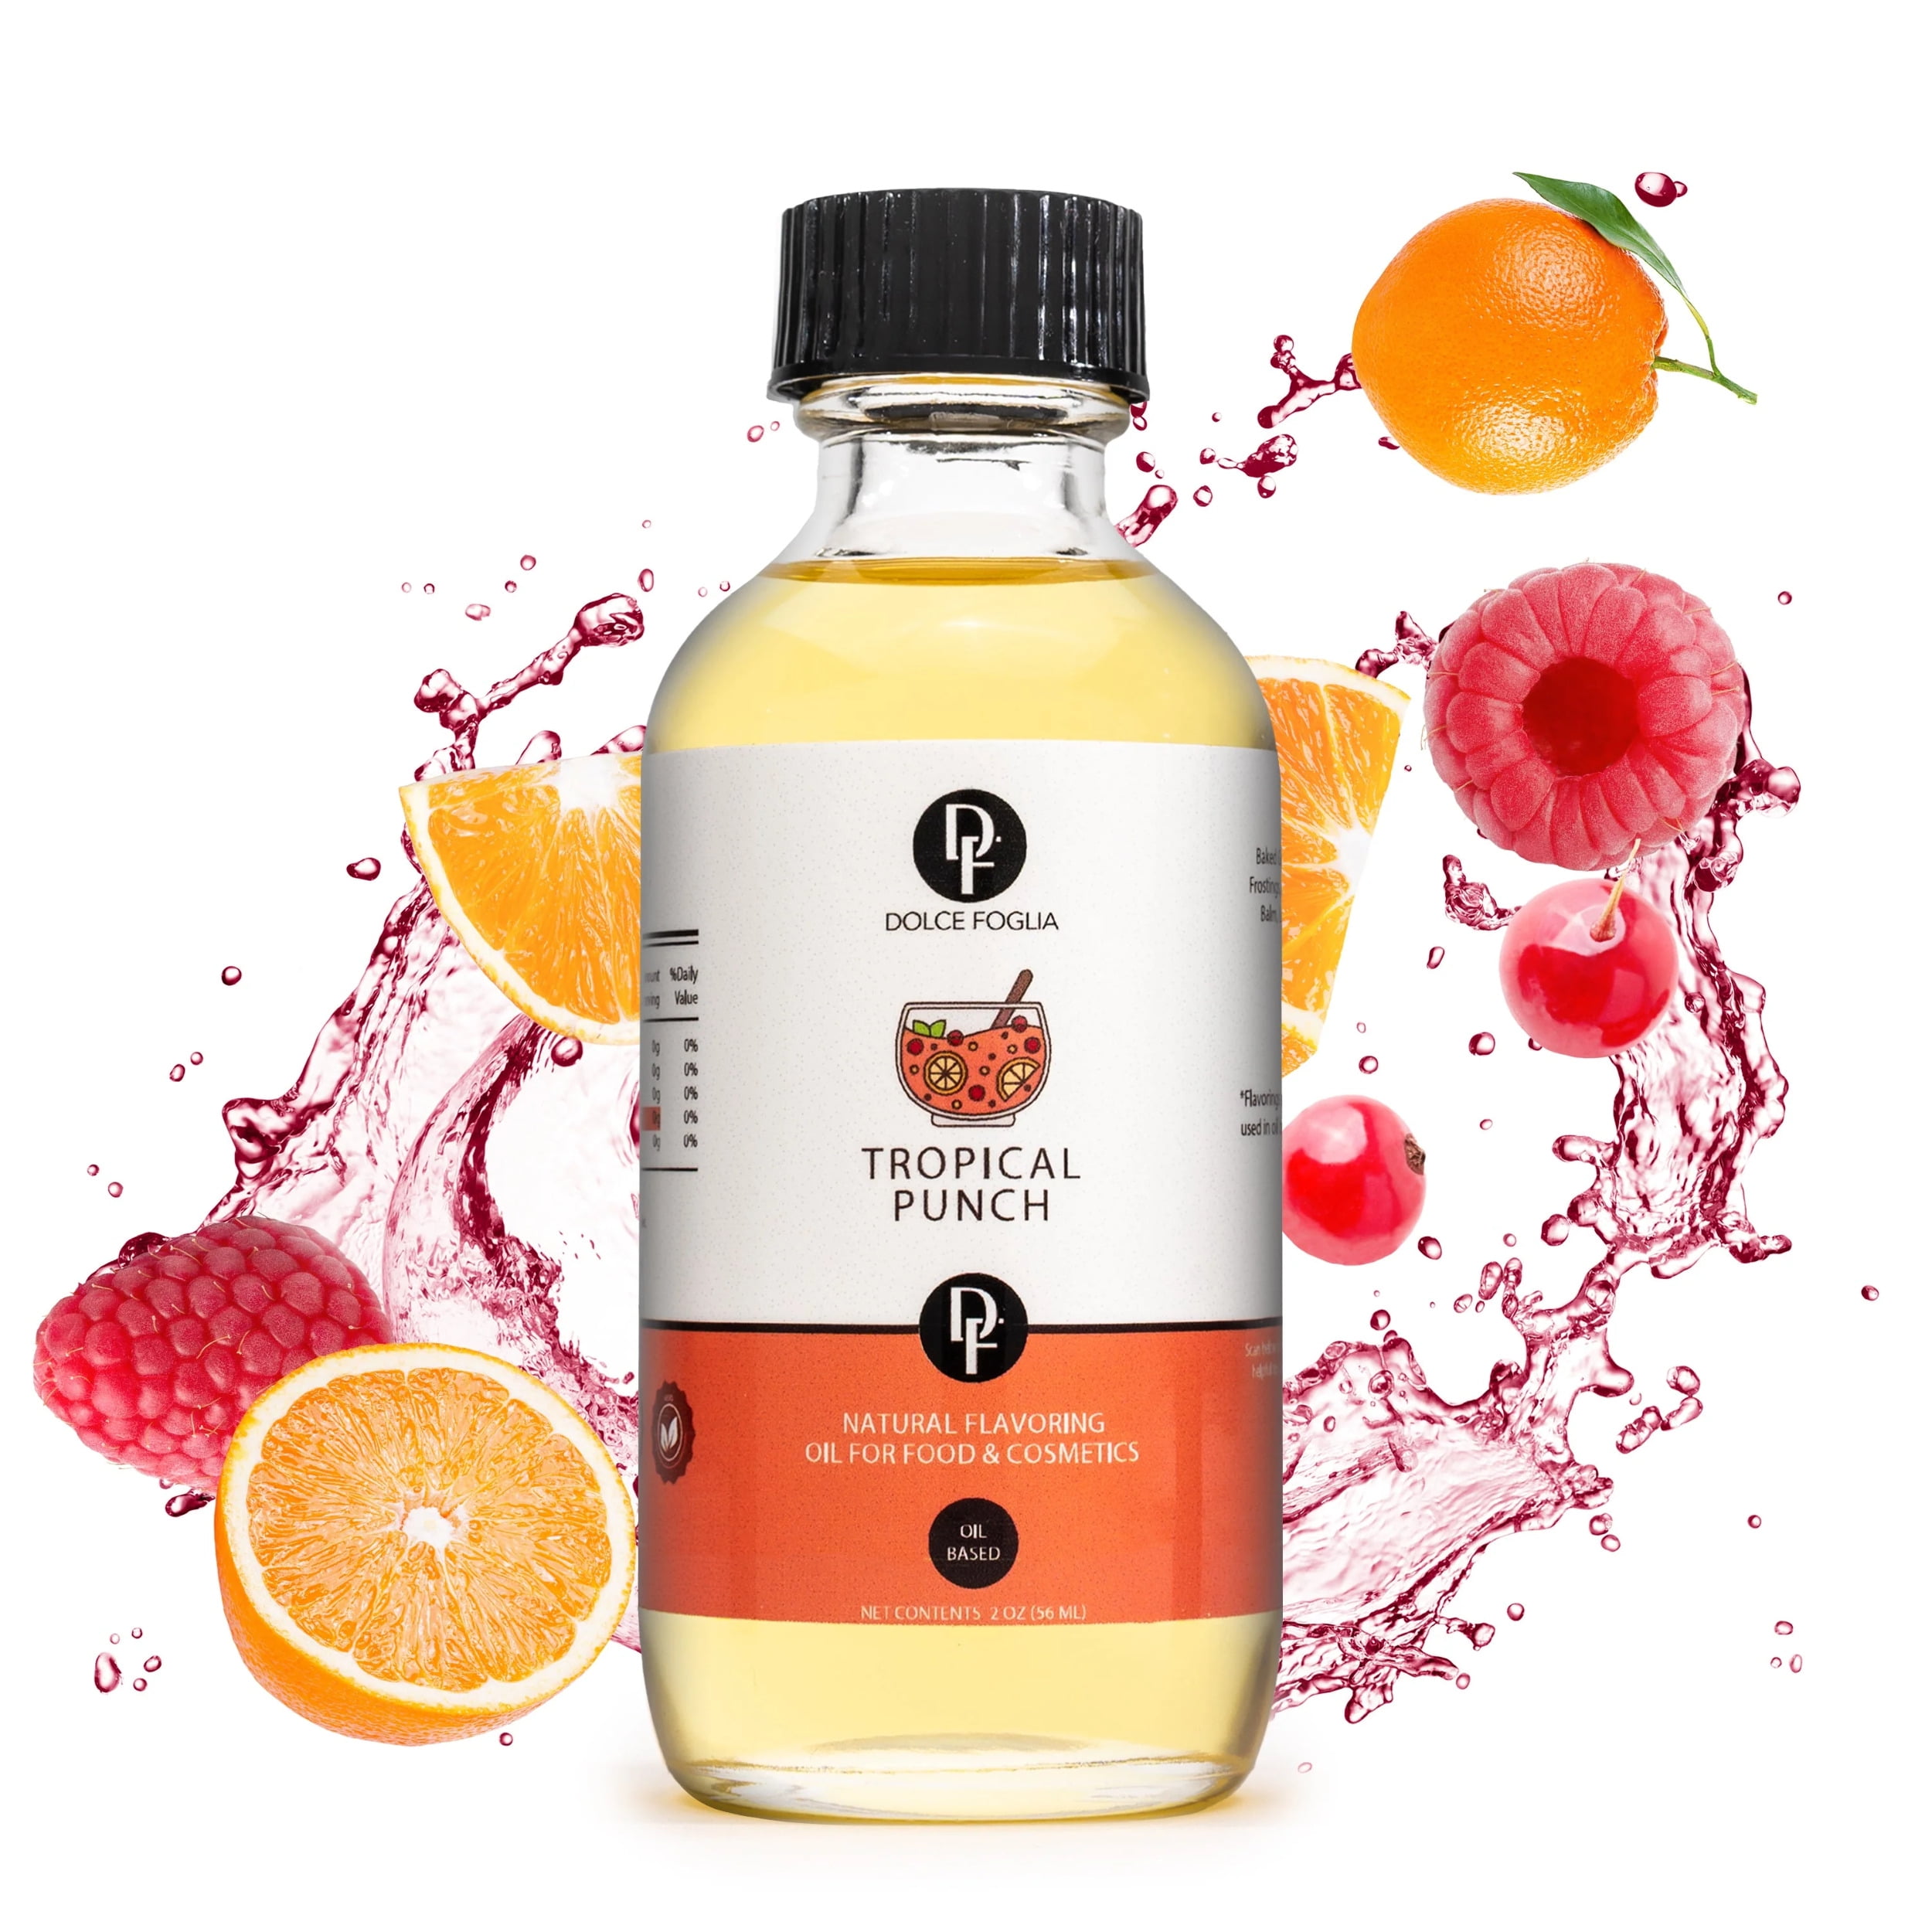  Dolce Foglia Strawberry Flavoring Oils - 1 Gallon